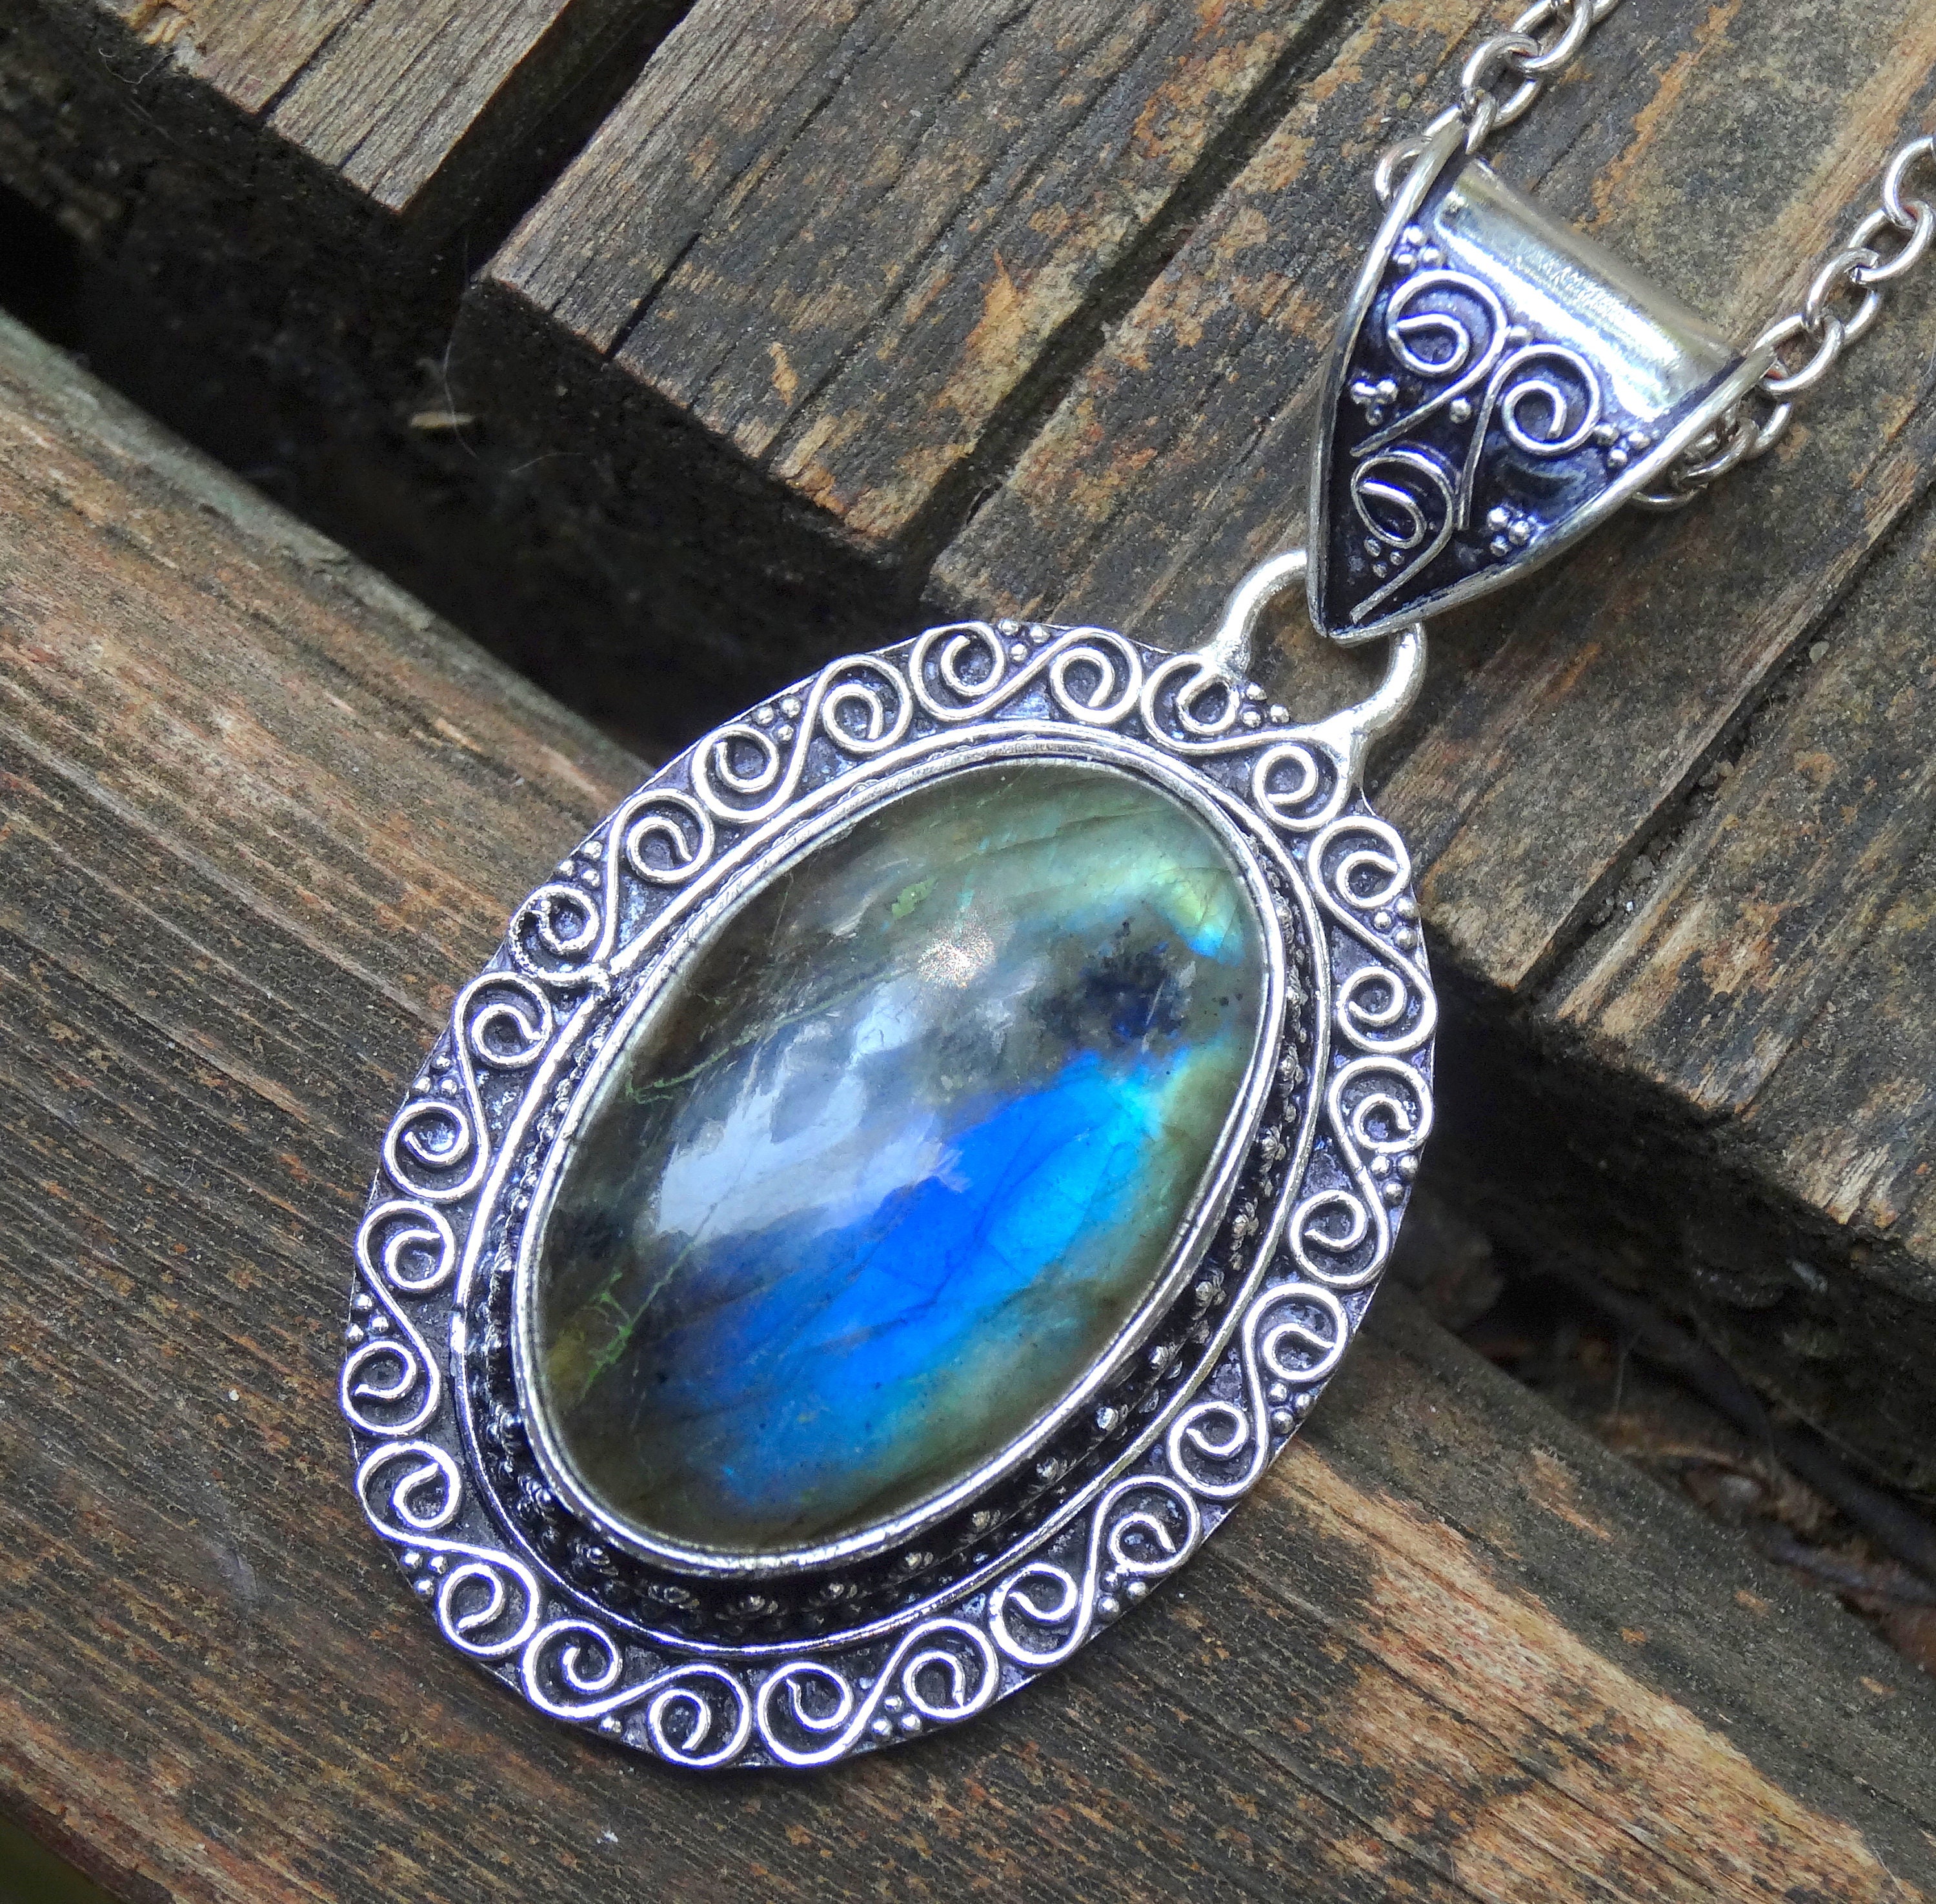 Magnifique collier labradorite bleue en pierres, cadeau idéal femme – Oussia